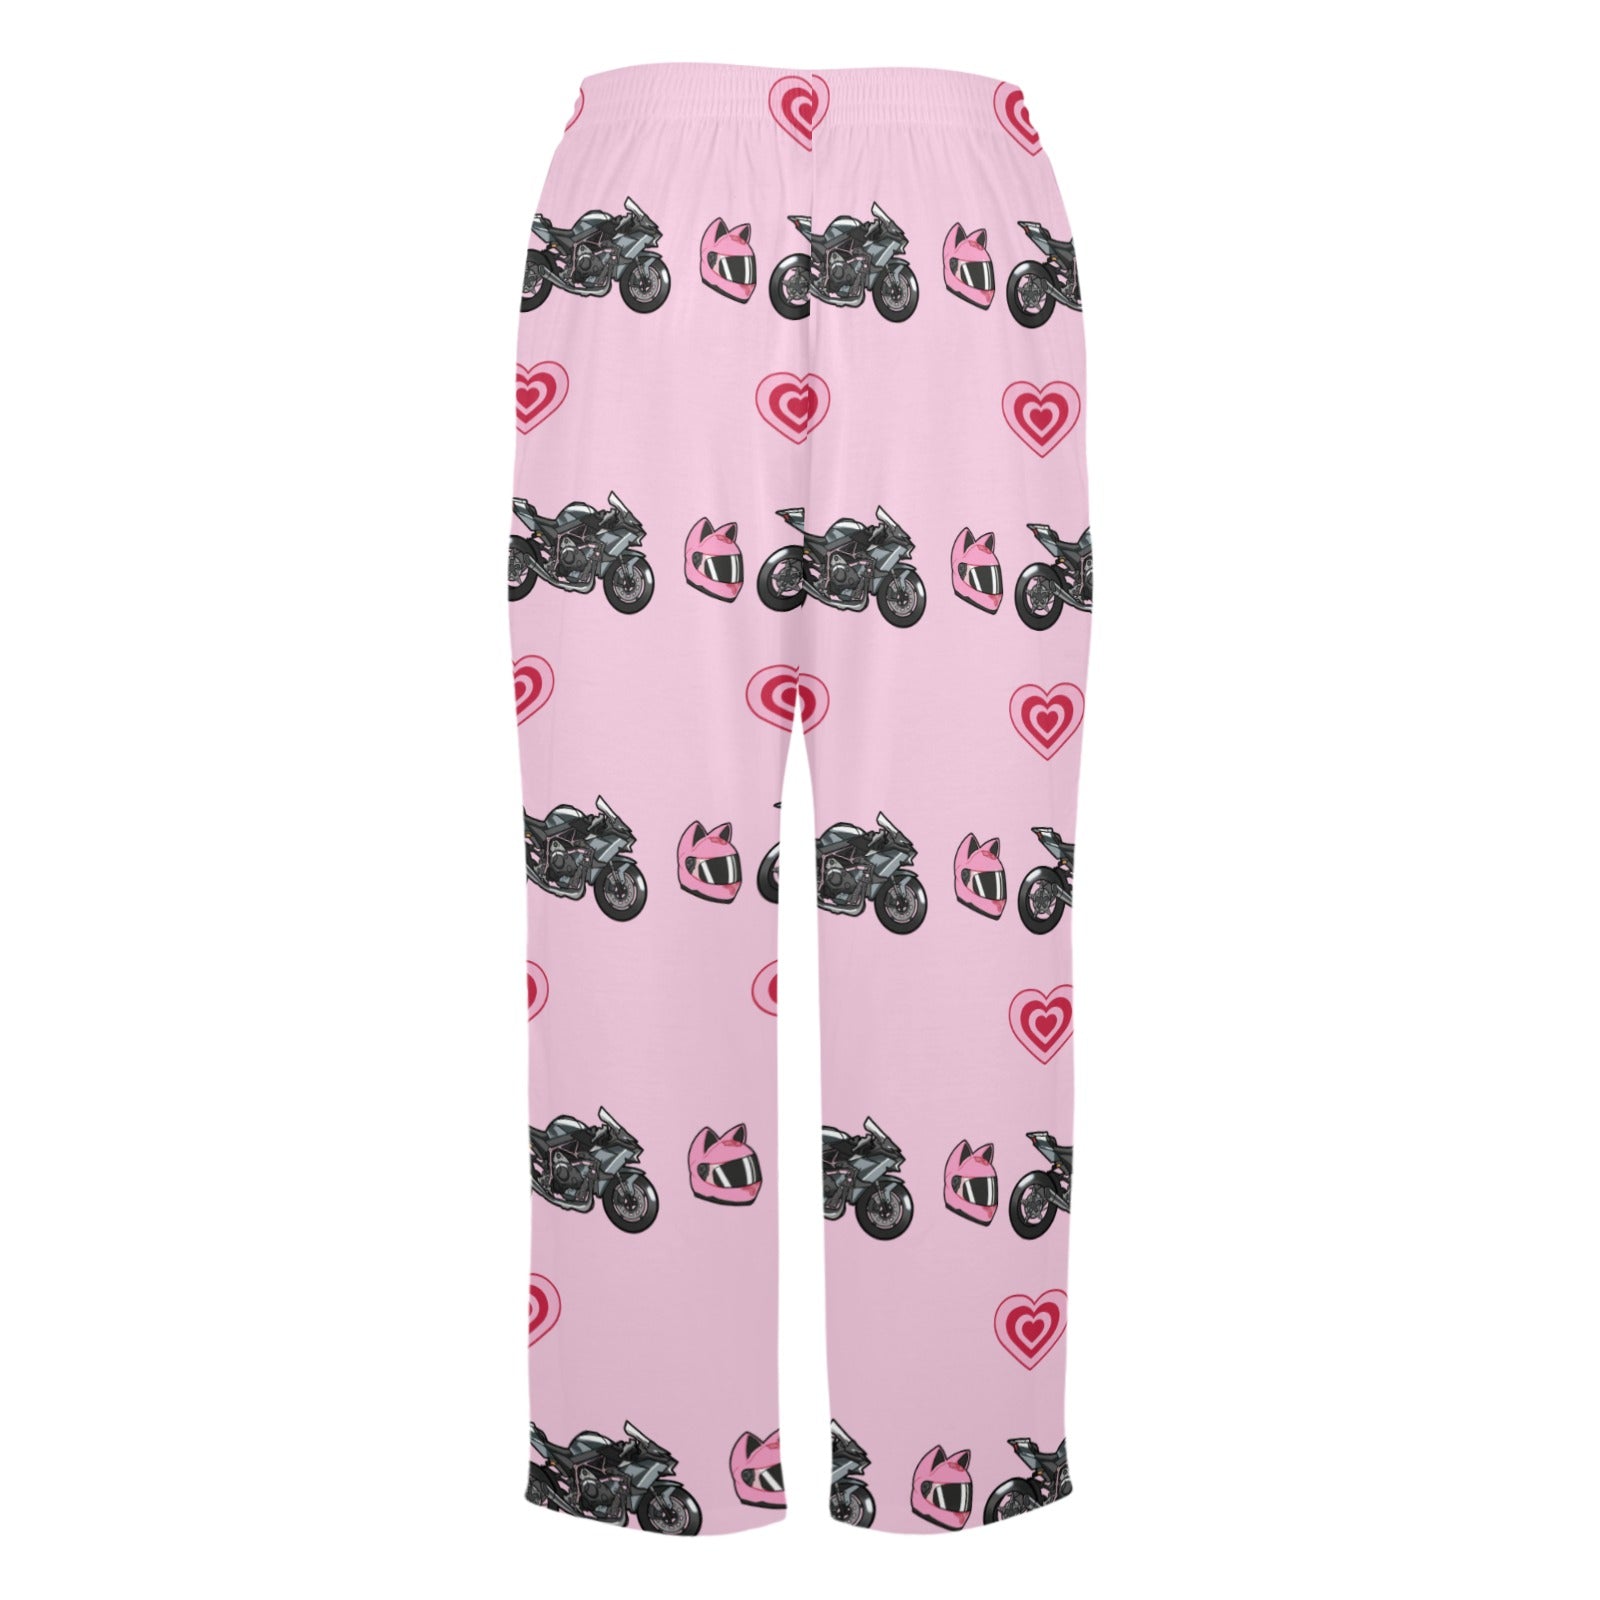 Kawasaki Ninja H2 R Pajama Pants Pink - 0